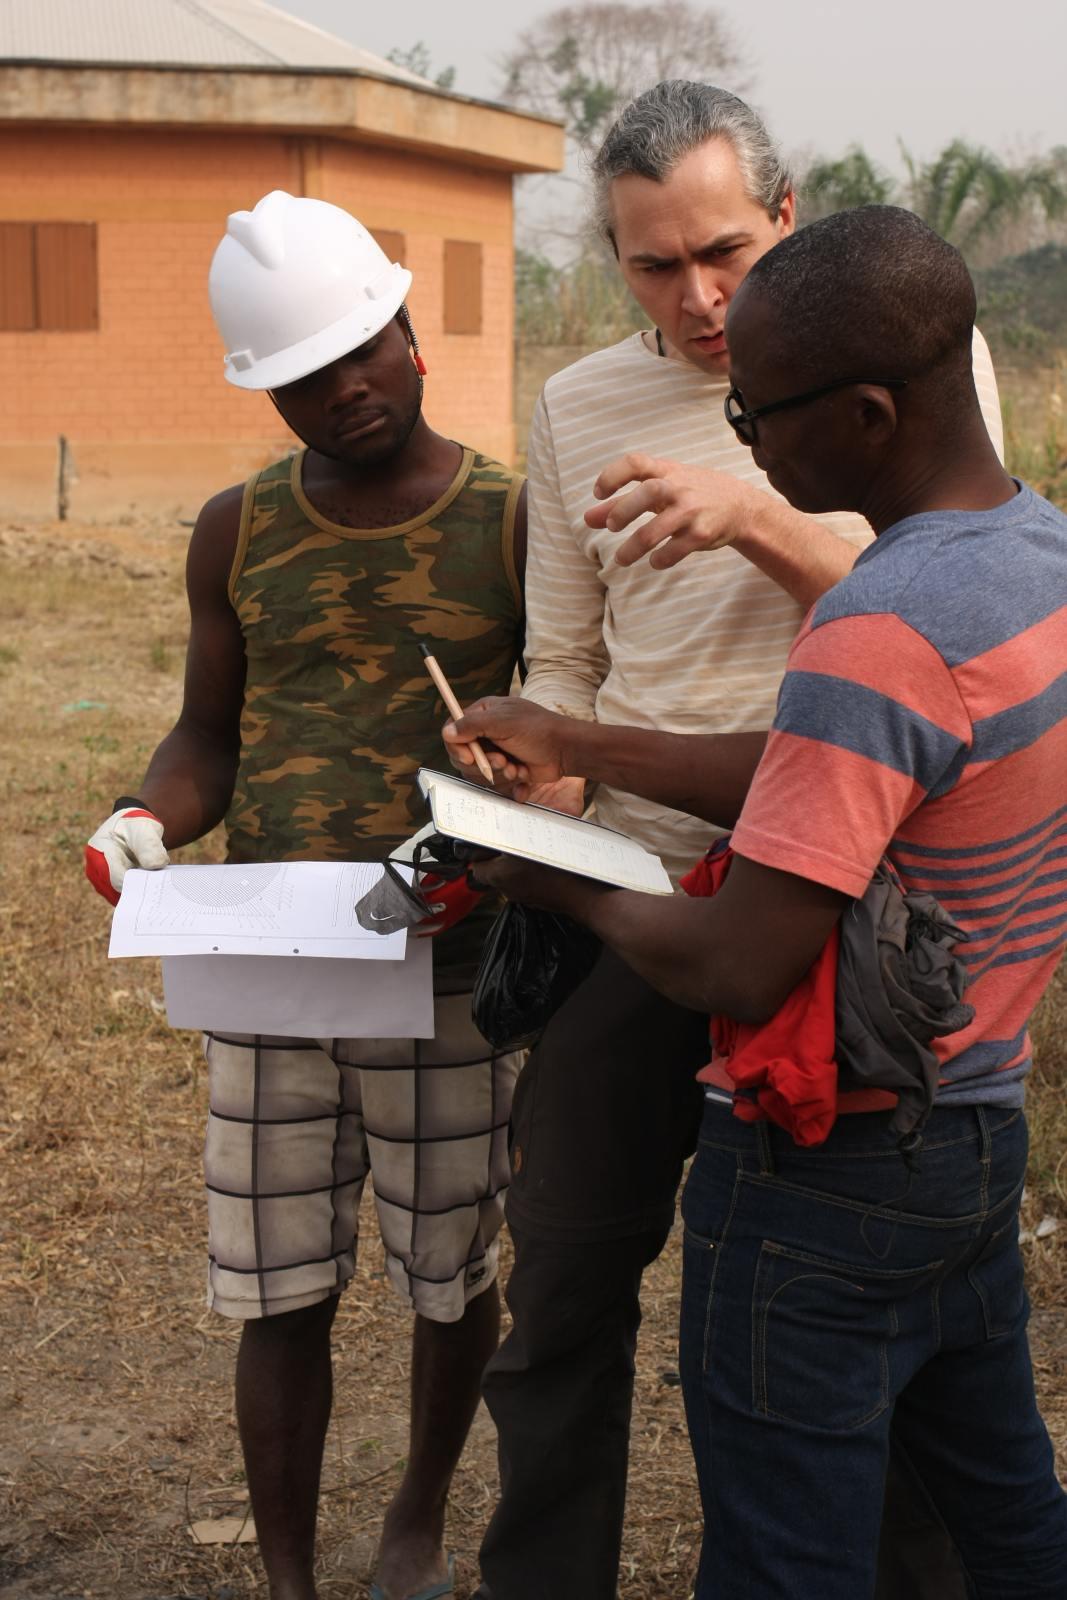 Drei Personen, in der Mitte ein deutscher Ingenieur, umgeben von zwei Dorfbewohnern, unterhalten sich anhand eines Dokuments